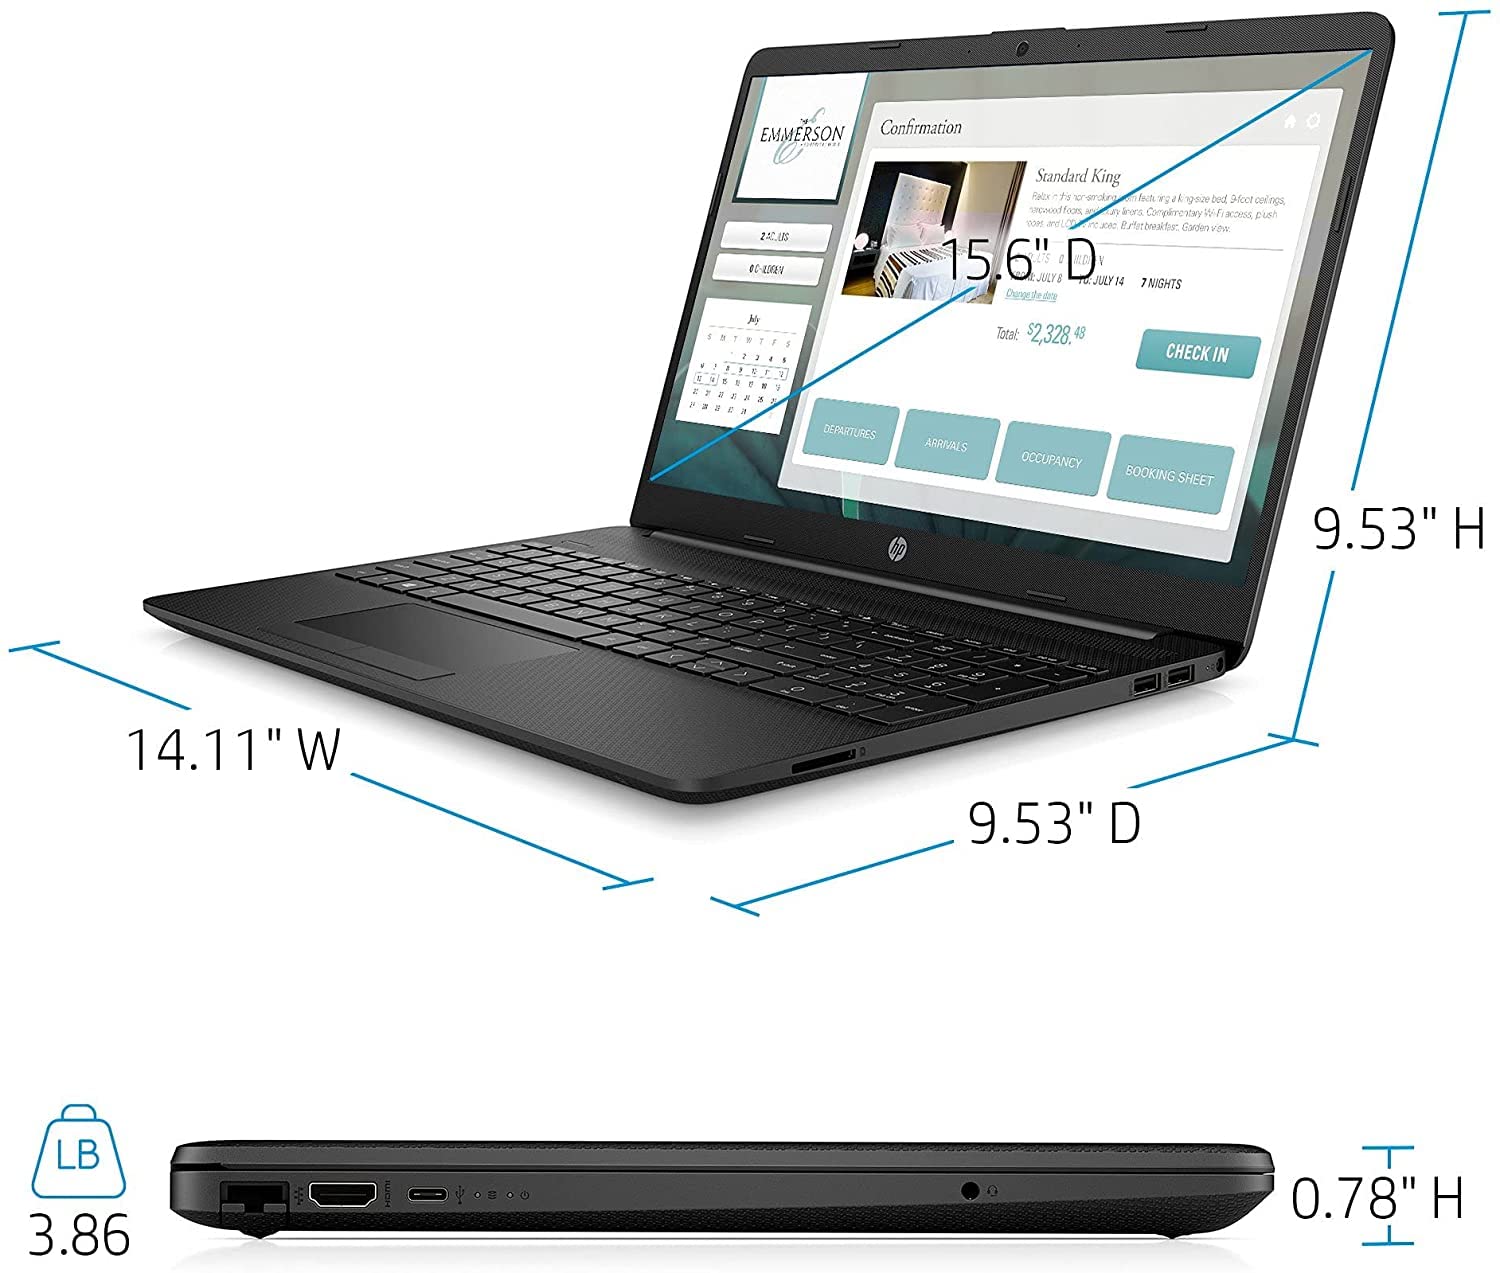 HP Newest 15 Laptop,15.6’’ FHD, Intel Celeron N4020, 4GB DDR4 RAM, 128GB SSD, Bluetooth, Webcam, WiFi, Black,Windows 10 Home